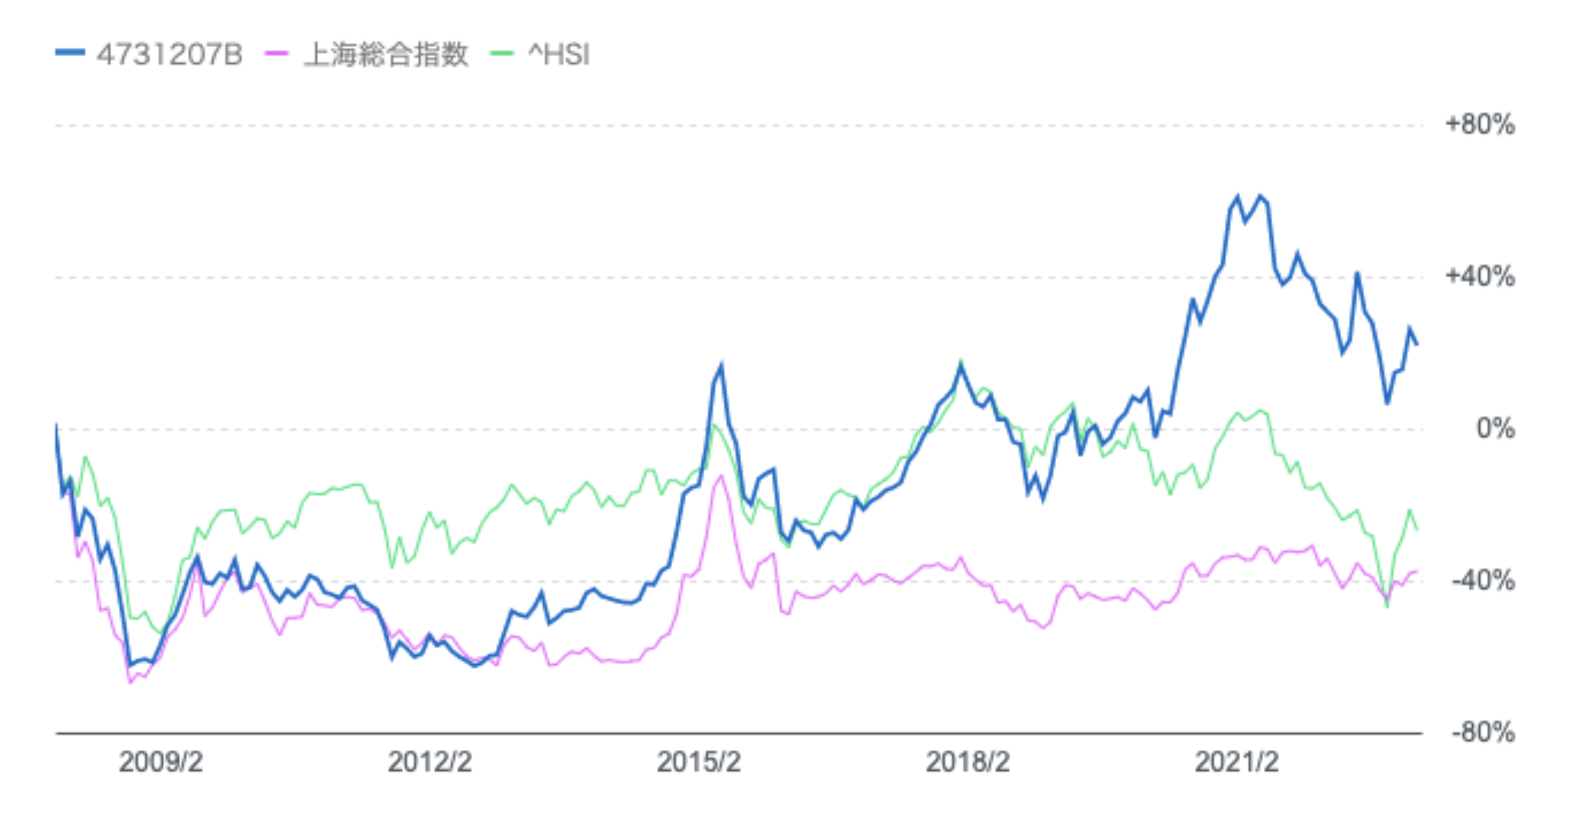 シャングリラと香港ハンセン指数と上海総合指数のチャートの比較